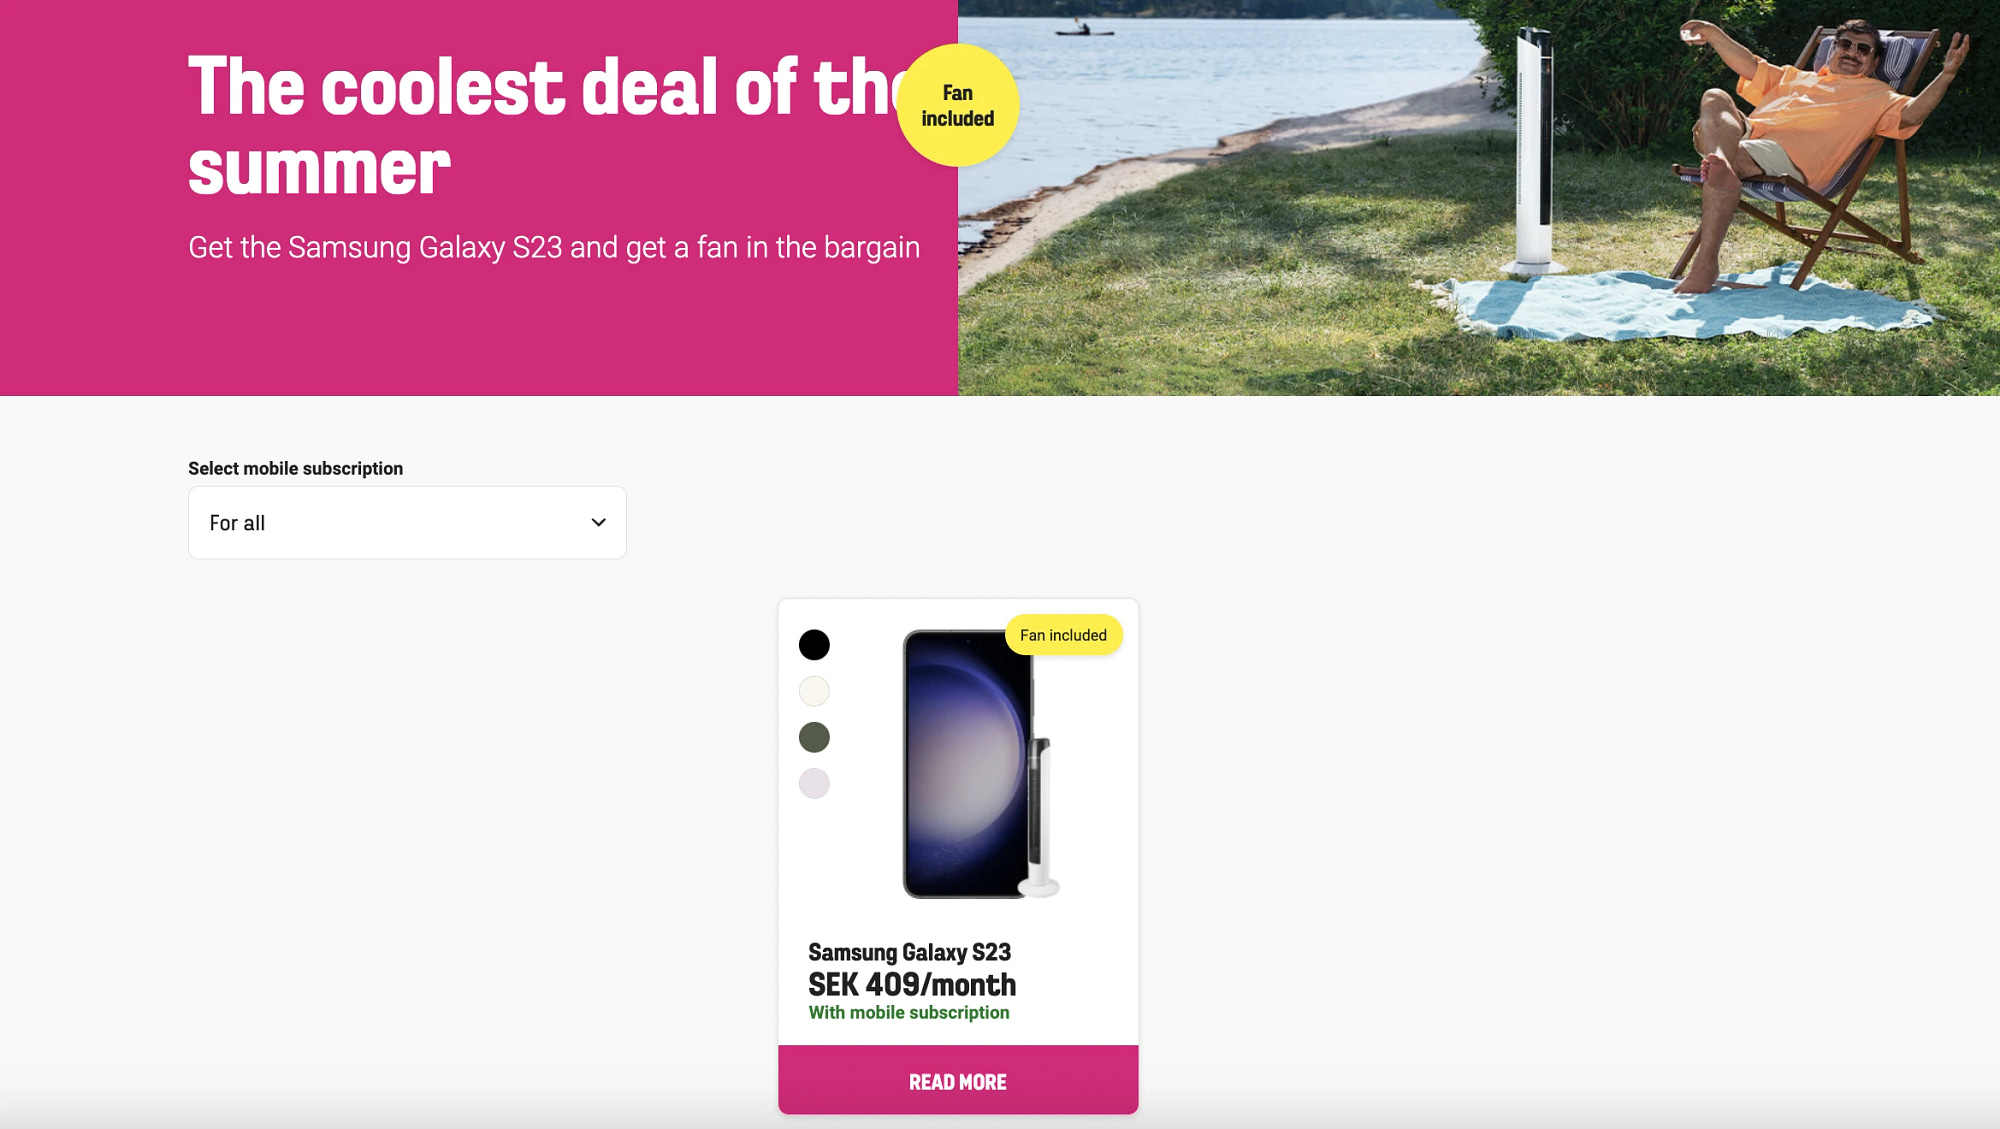 Comviq Samsung Galaxy S23 Summer Deal - Get a free fan